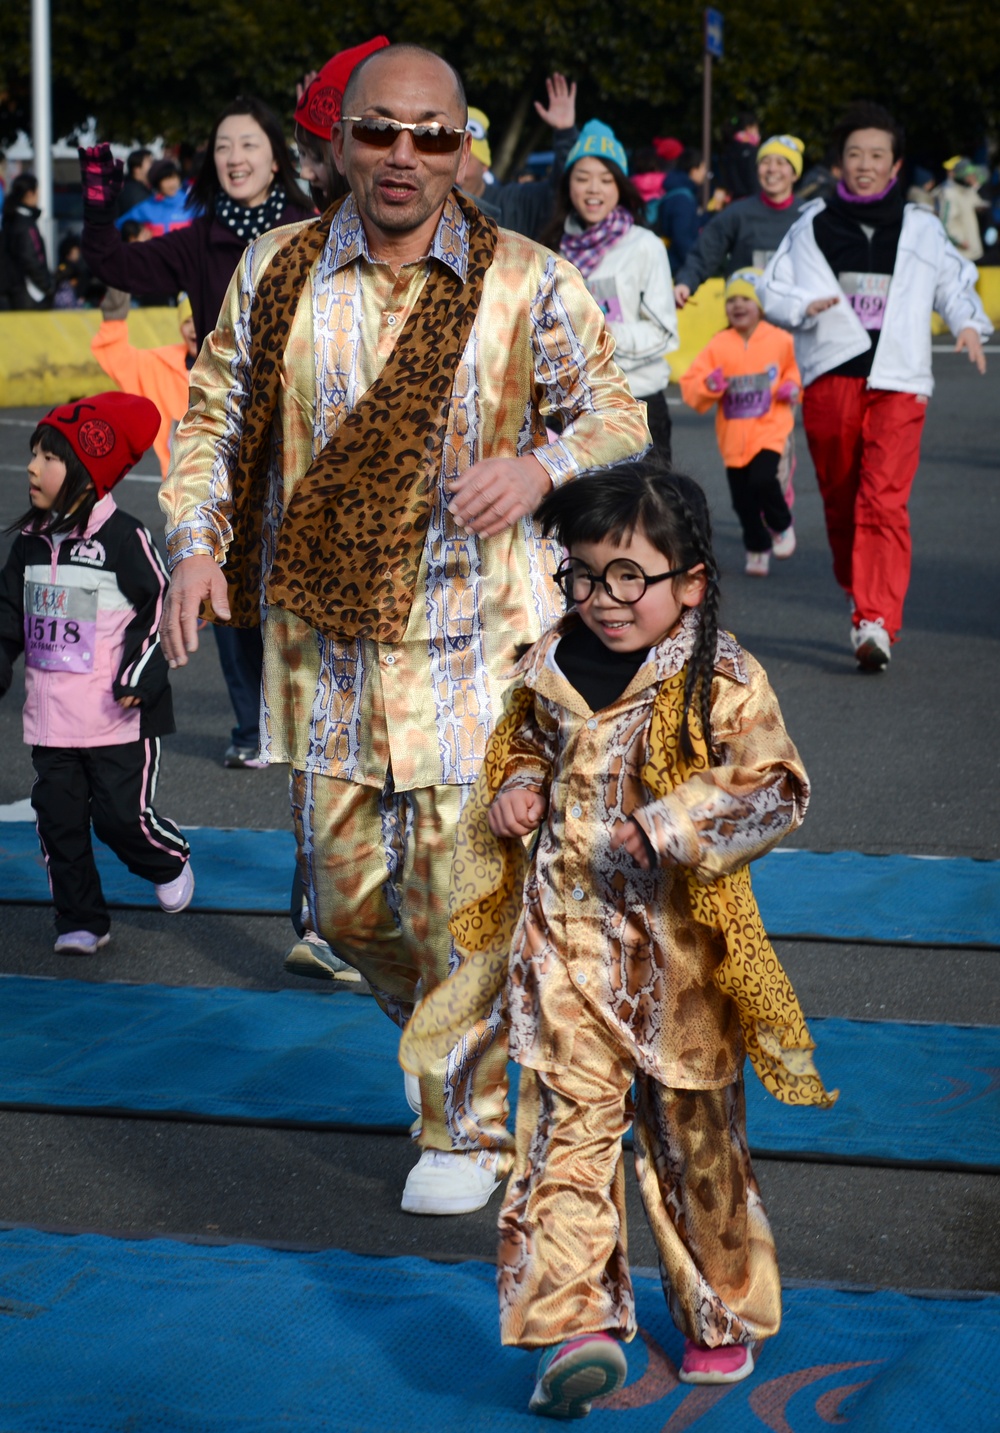 12,000 participate in race event at Yokota